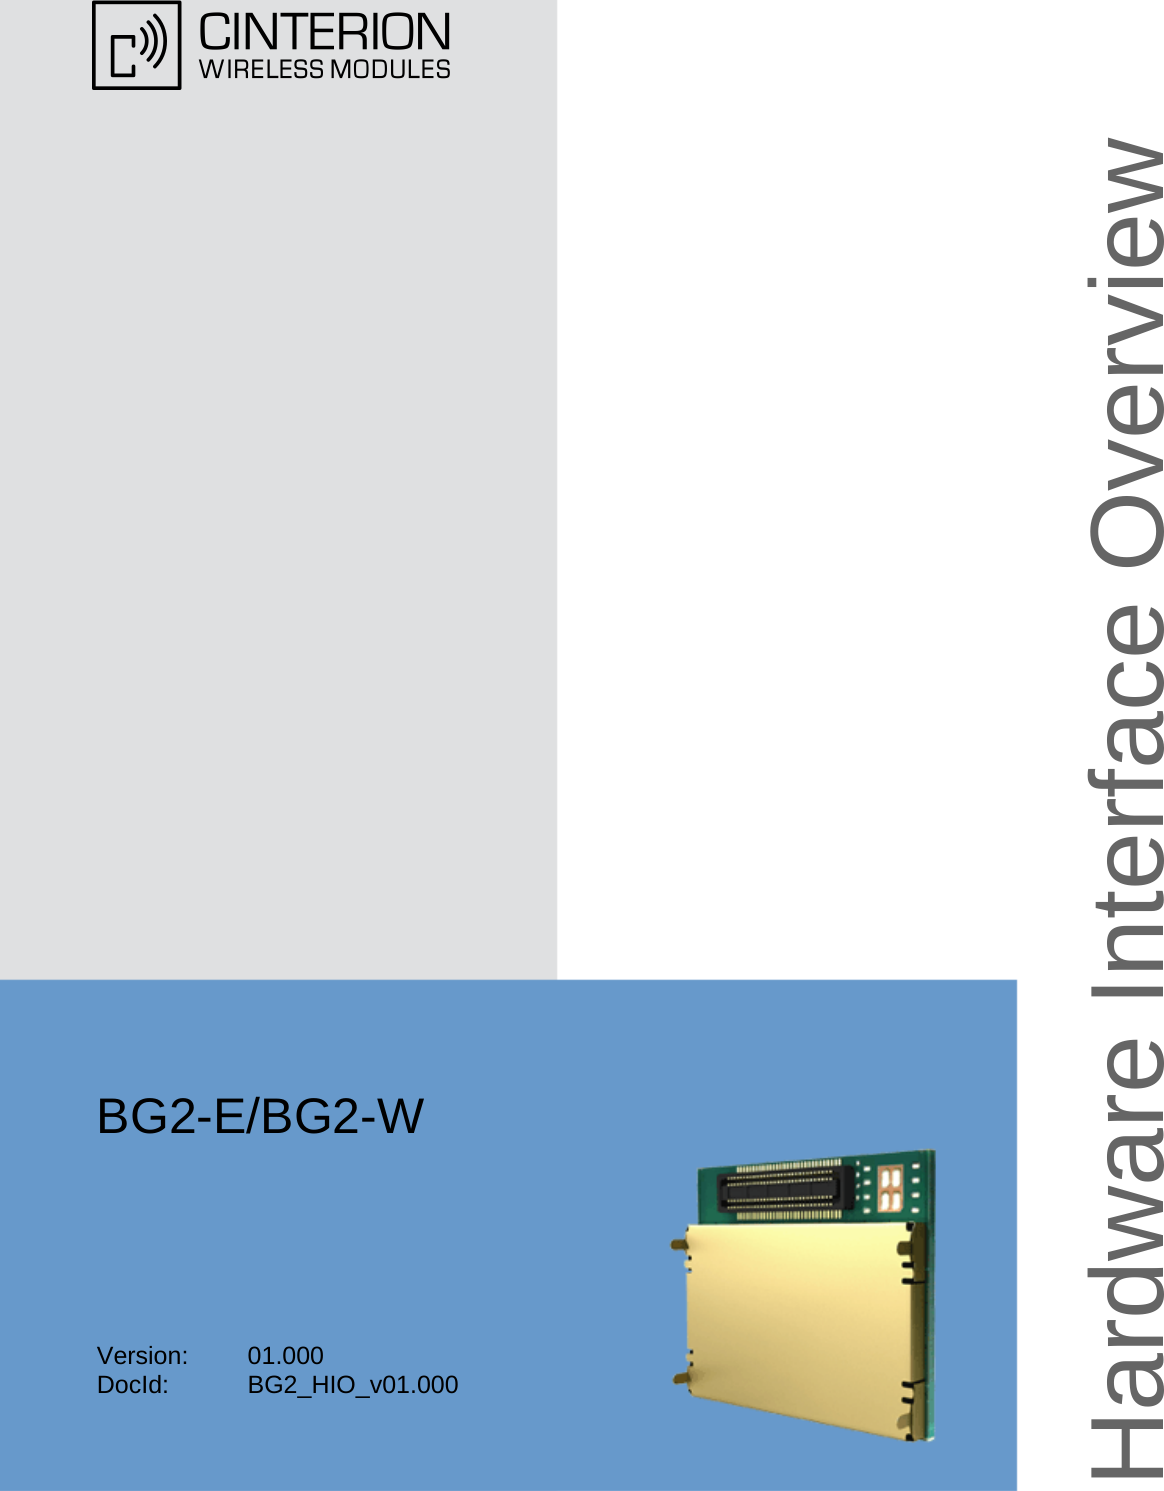 BG2-E/BG2-WVersion: 01.000DocId: BG2_HIO_v01.000Hardware Interface Overview